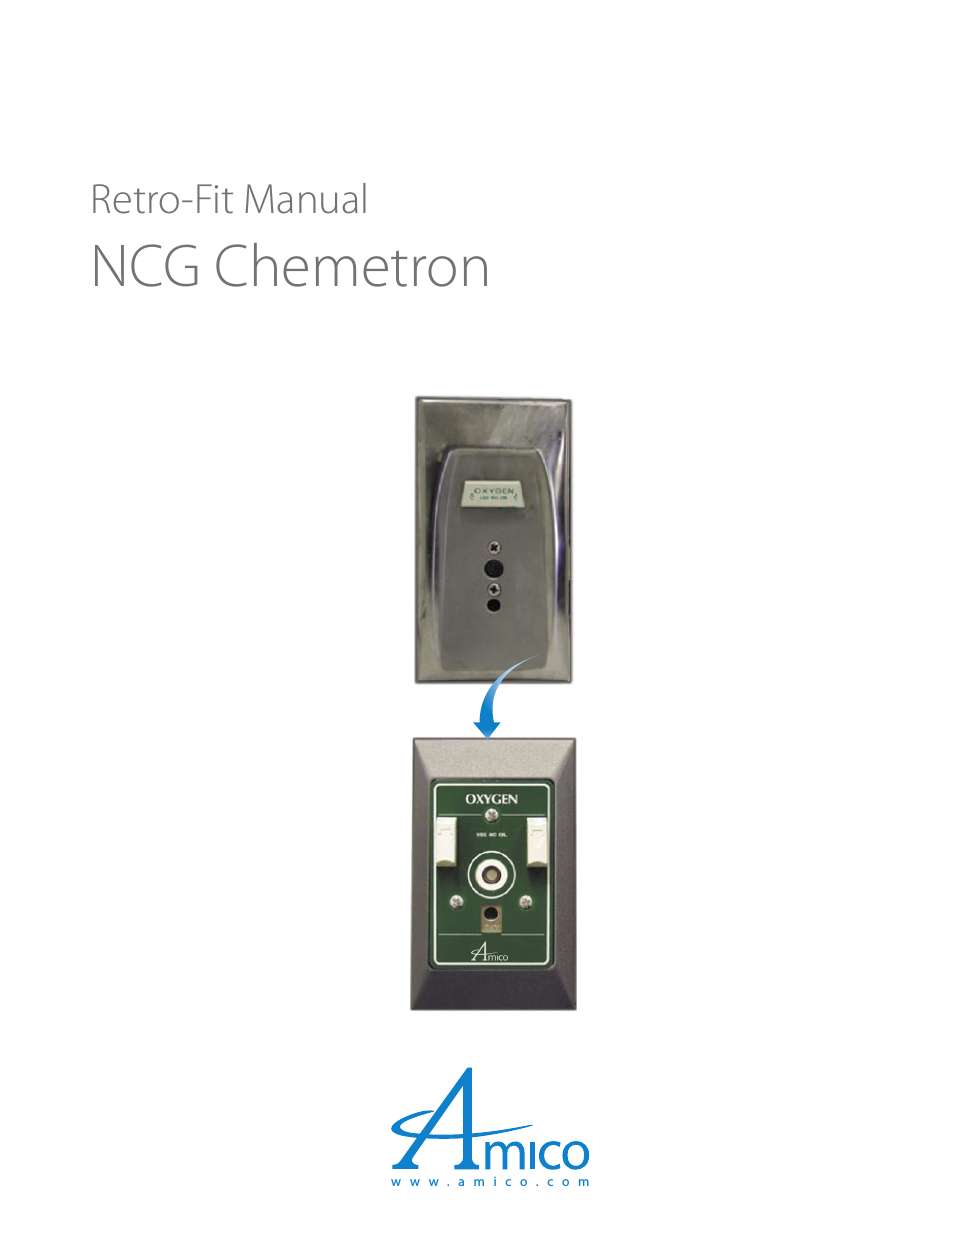 NCG Chemetron Retro-Fit Outlet